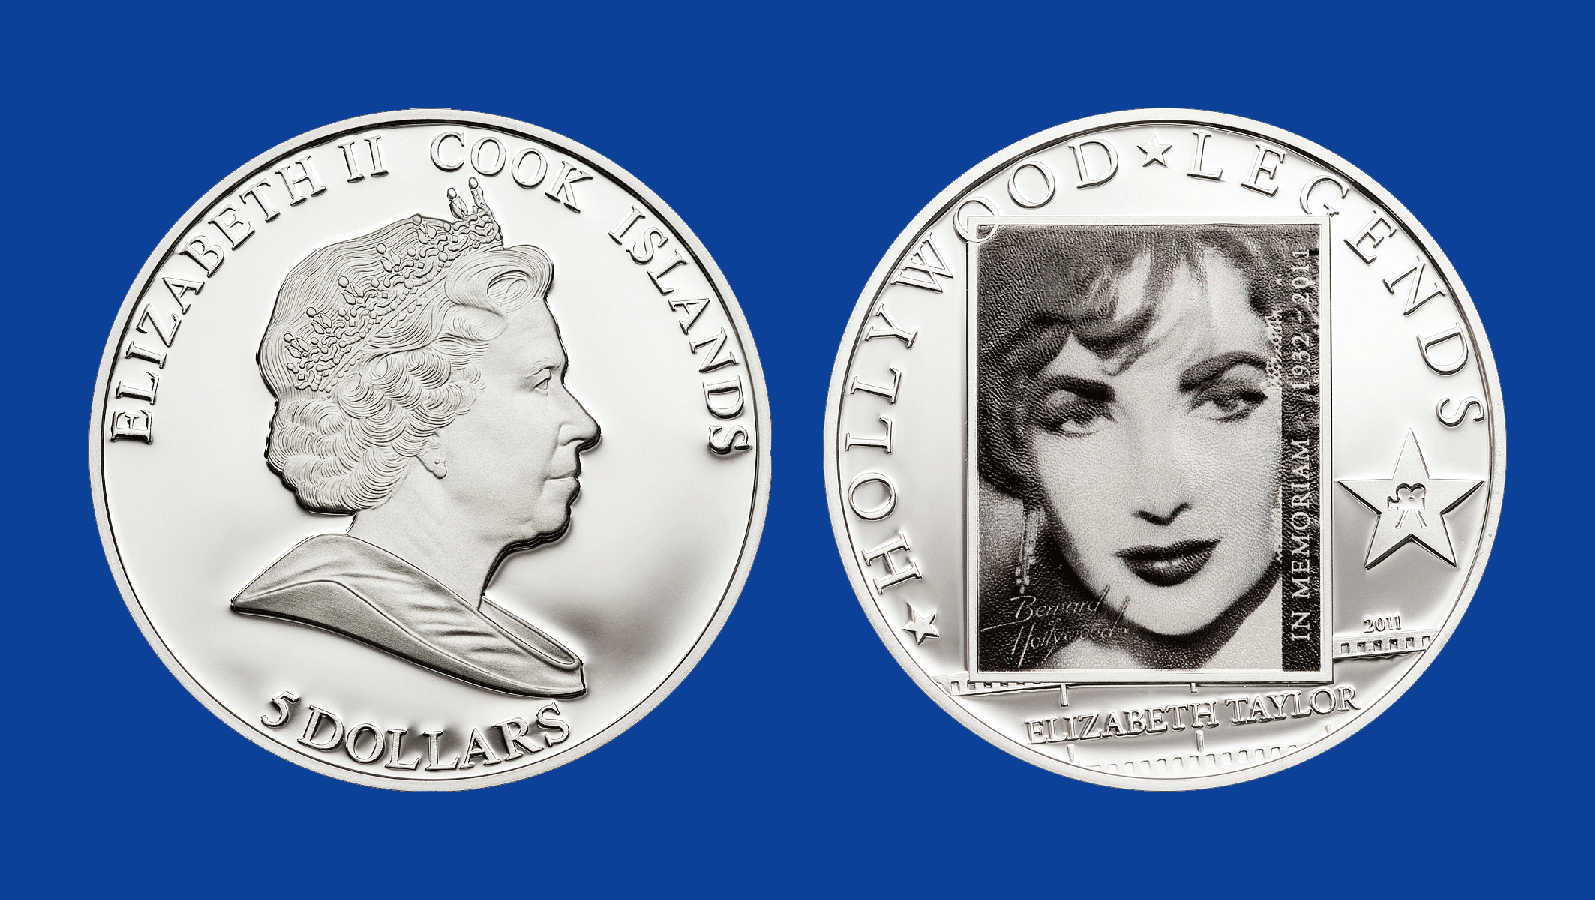 Elizabeth Taylor in Memoriam. $1 Silver plated